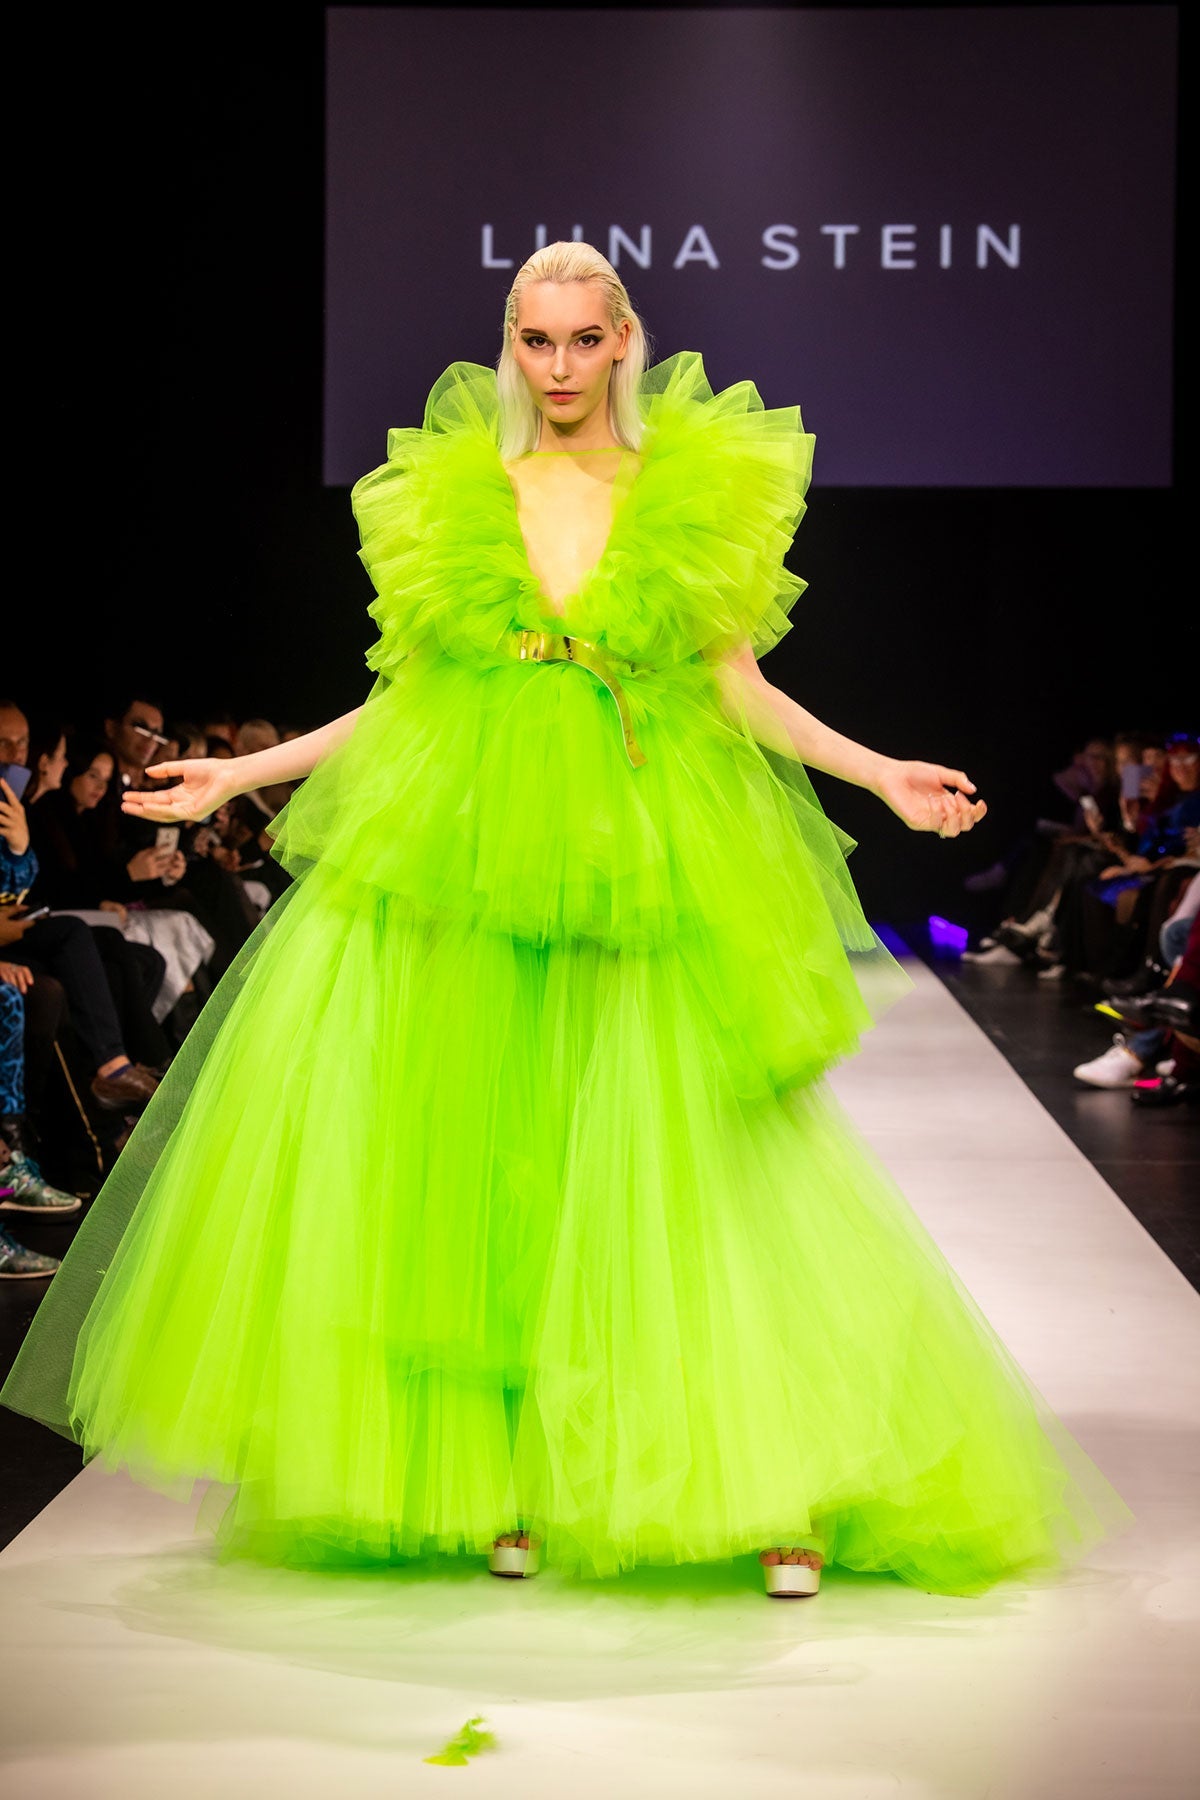 Green Fluo Fairytale Dress